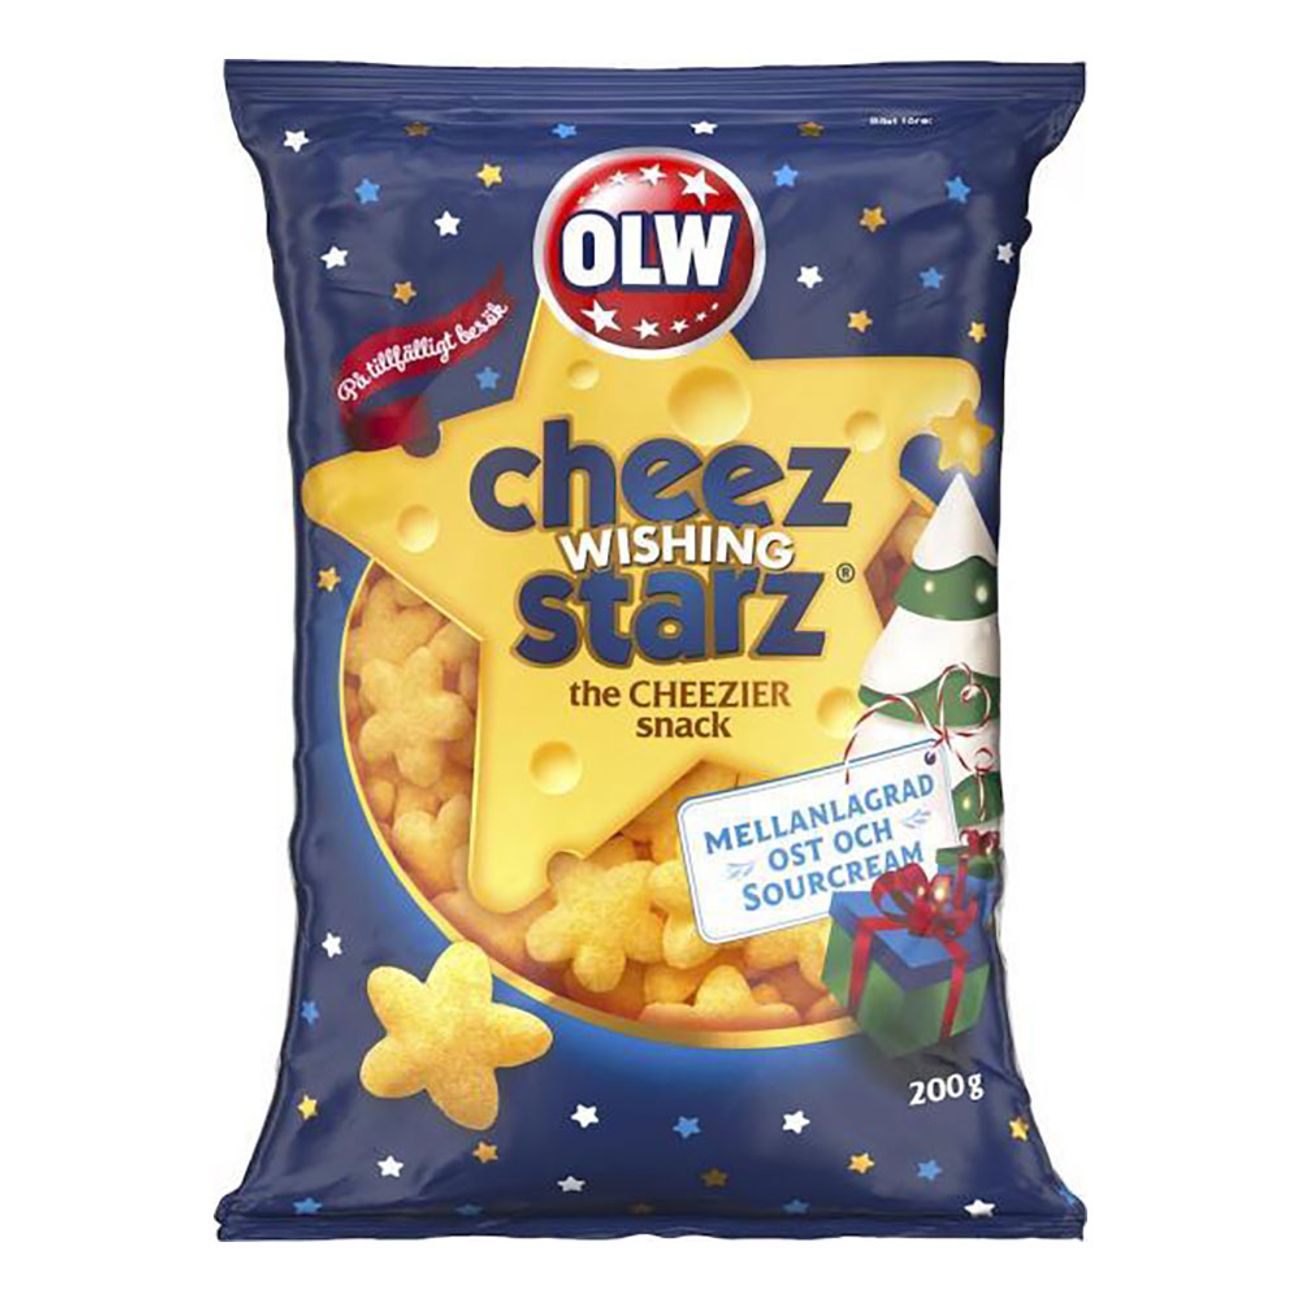 olw-cheez-whishing-starz-79497-1